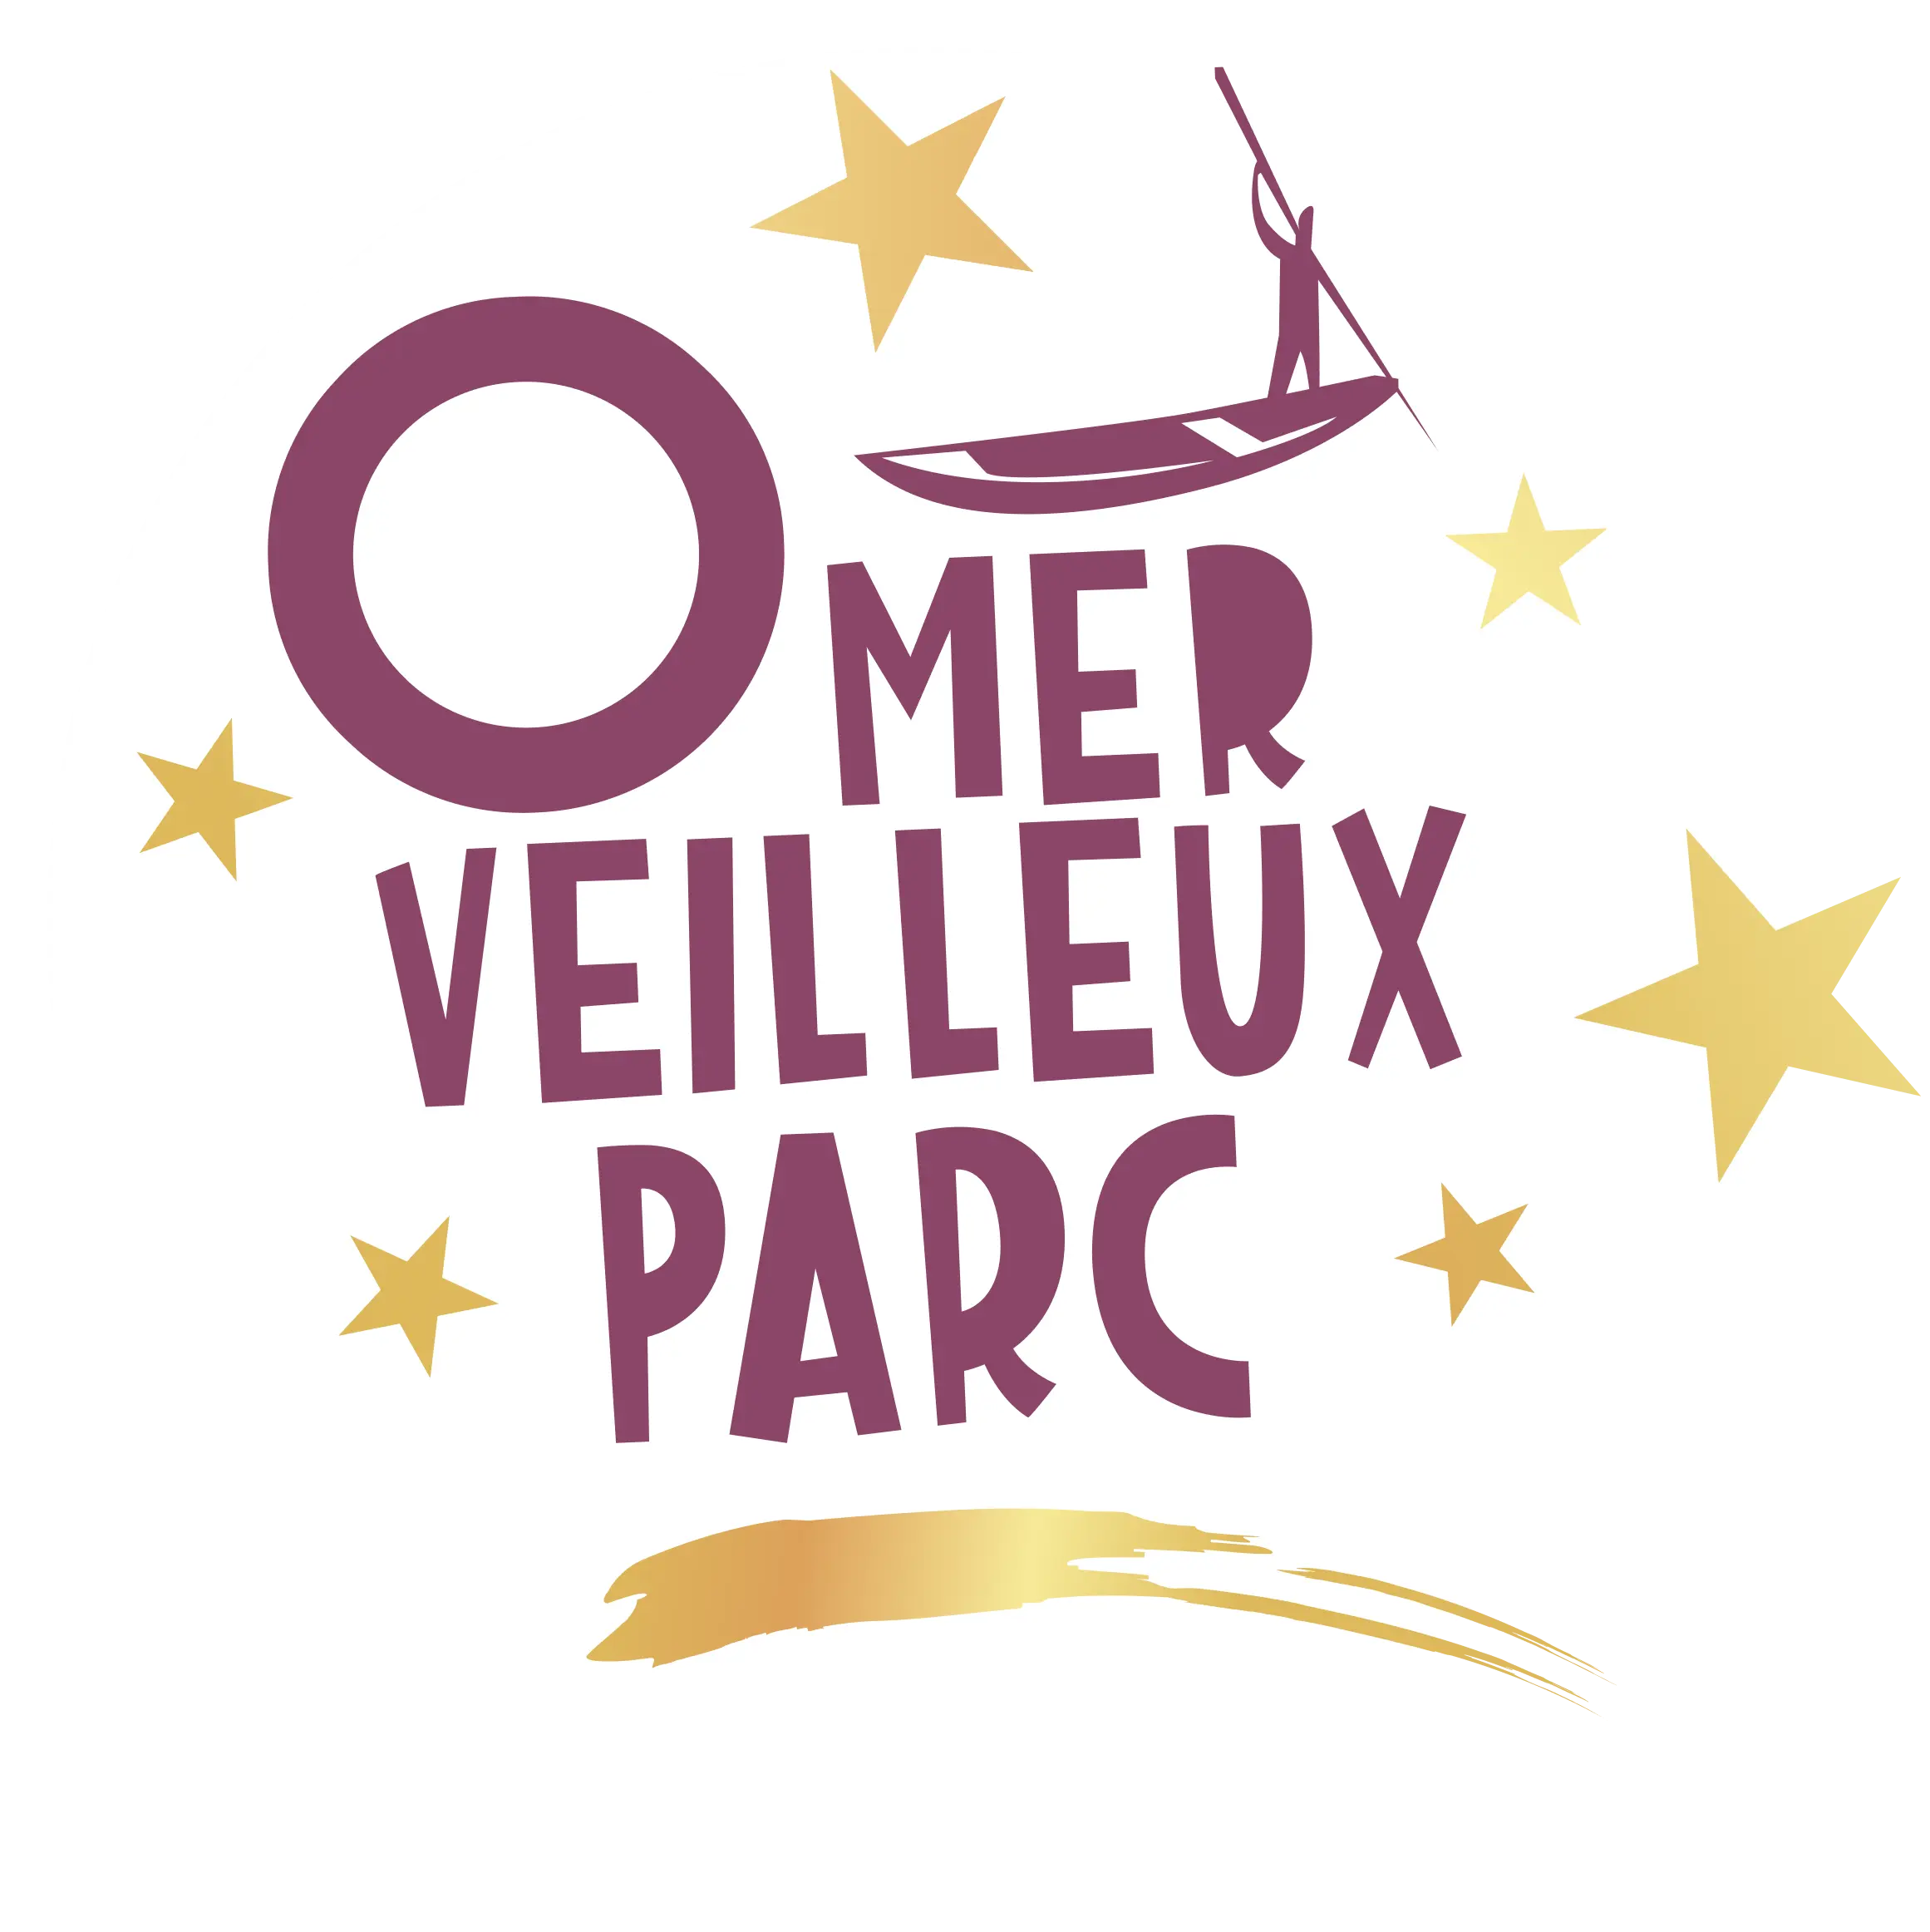 Logo Omerveilleux Parc